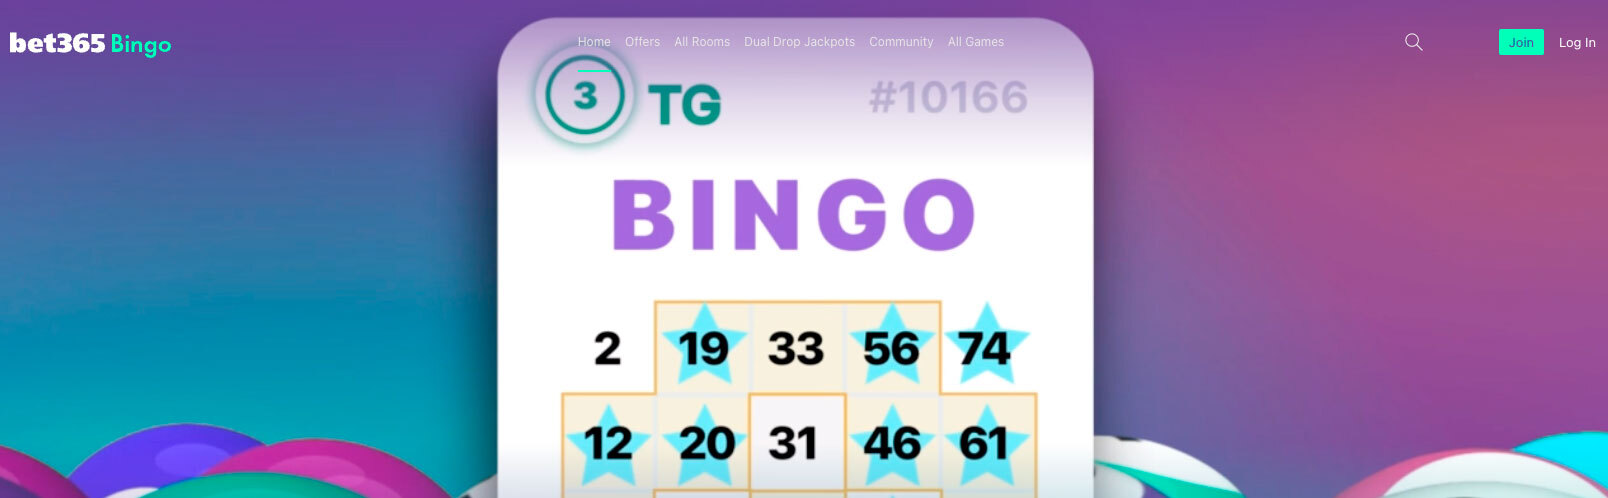 Bet365-Bingo